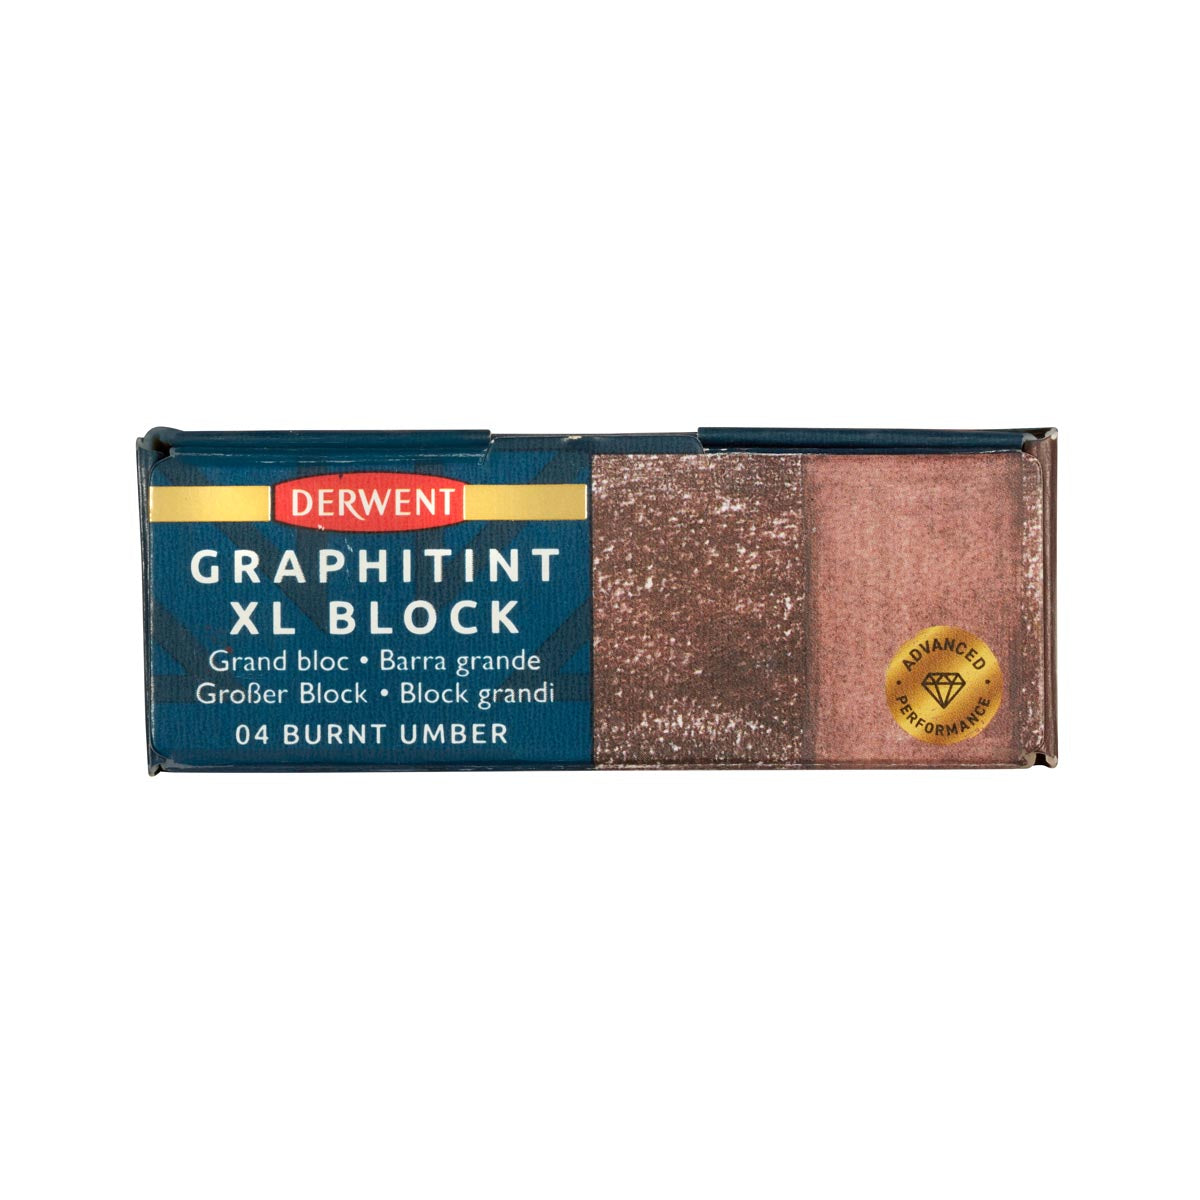 Derwent - Graphitint XL Block - Burnt Umber